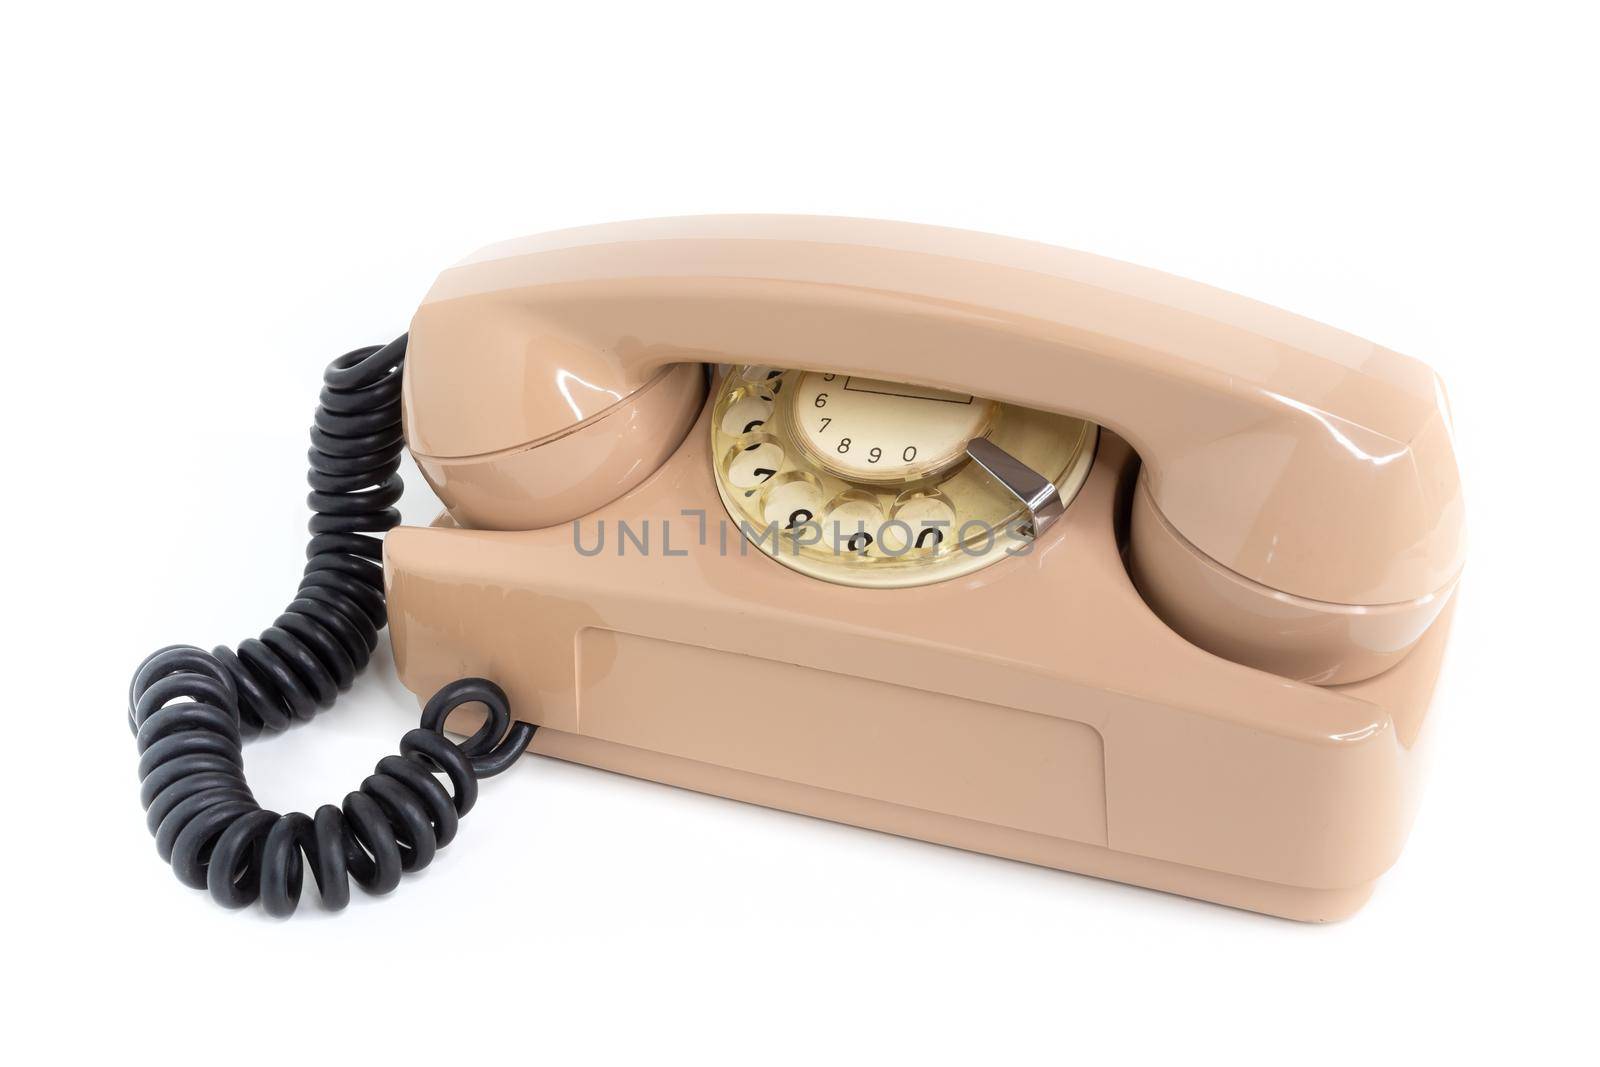 Vintage telephone by germanopoli